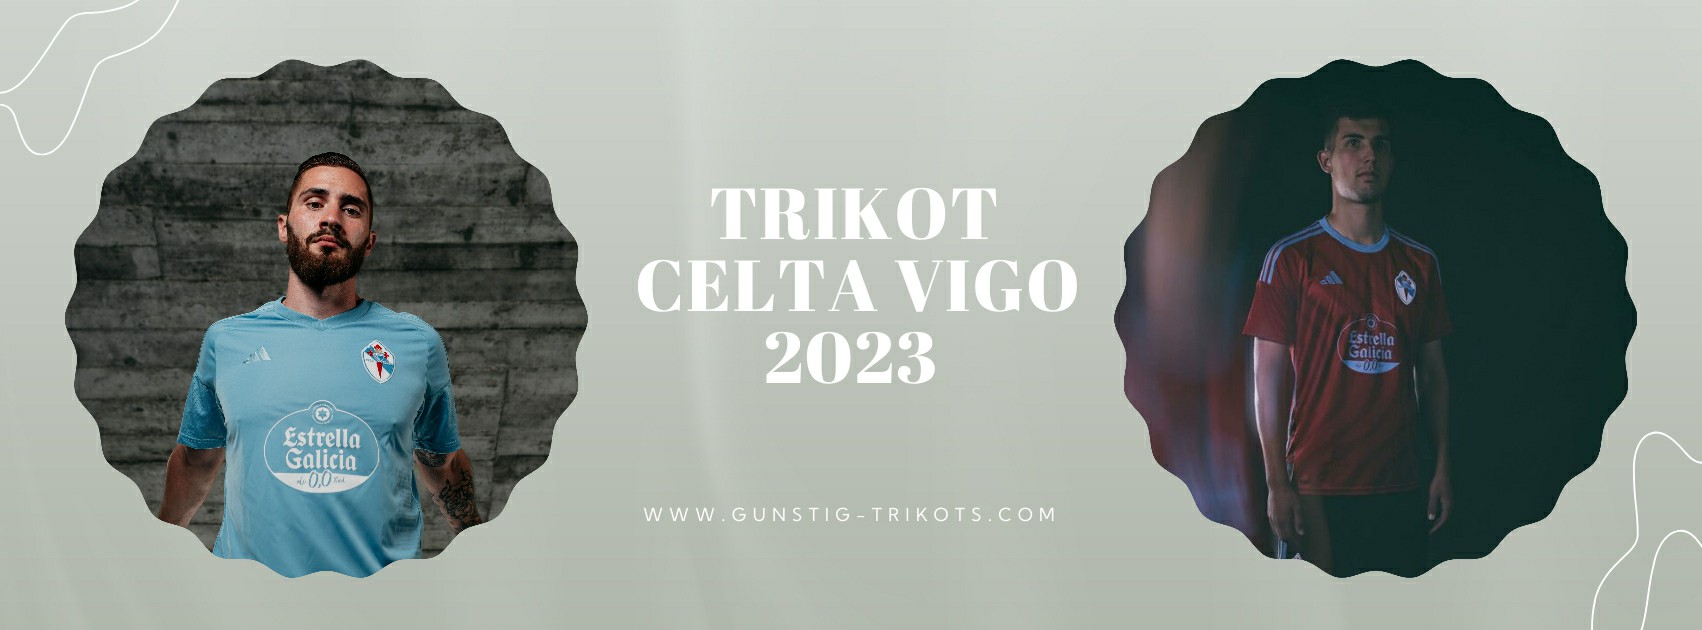 Celta Vigo Trikot 2023-2024